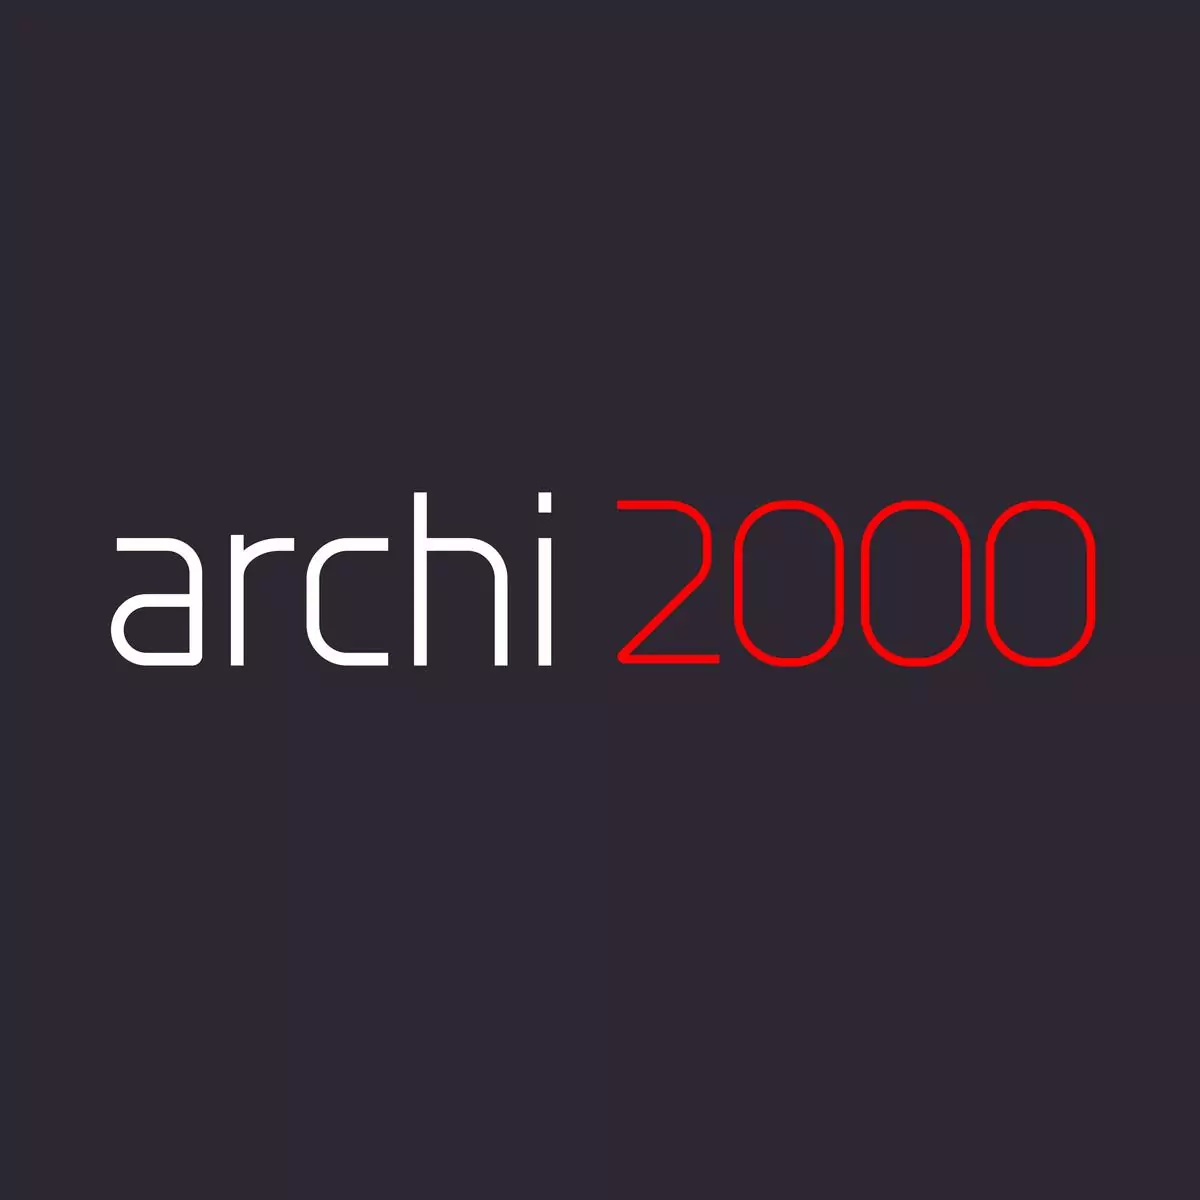 Archi2000